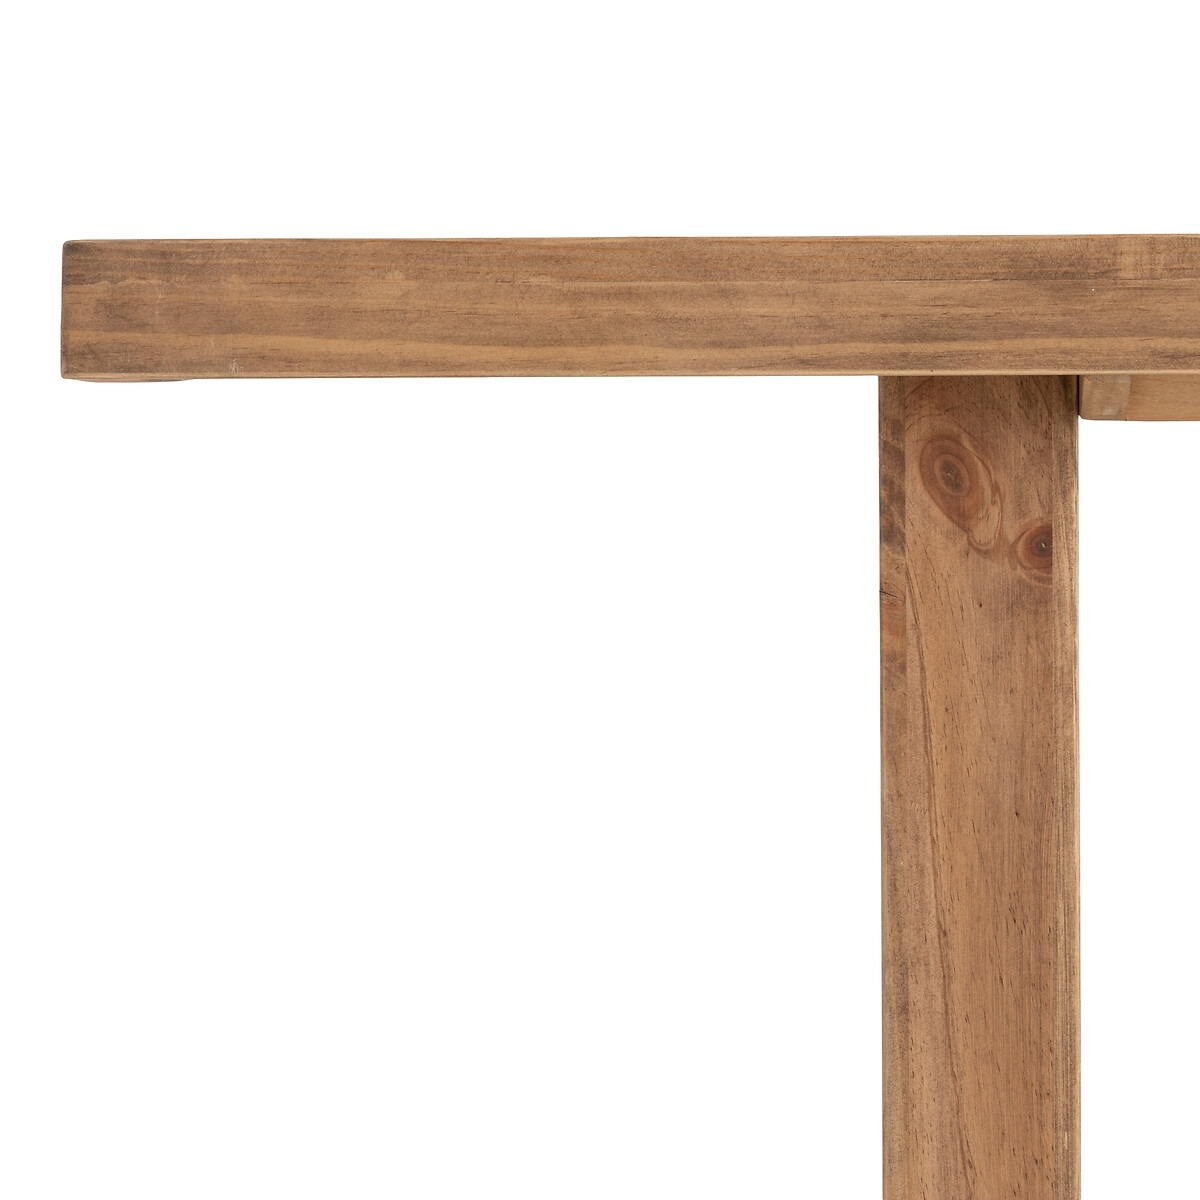 Malu Rectangular Pine Dining Table (Seats 8-10) - image 1